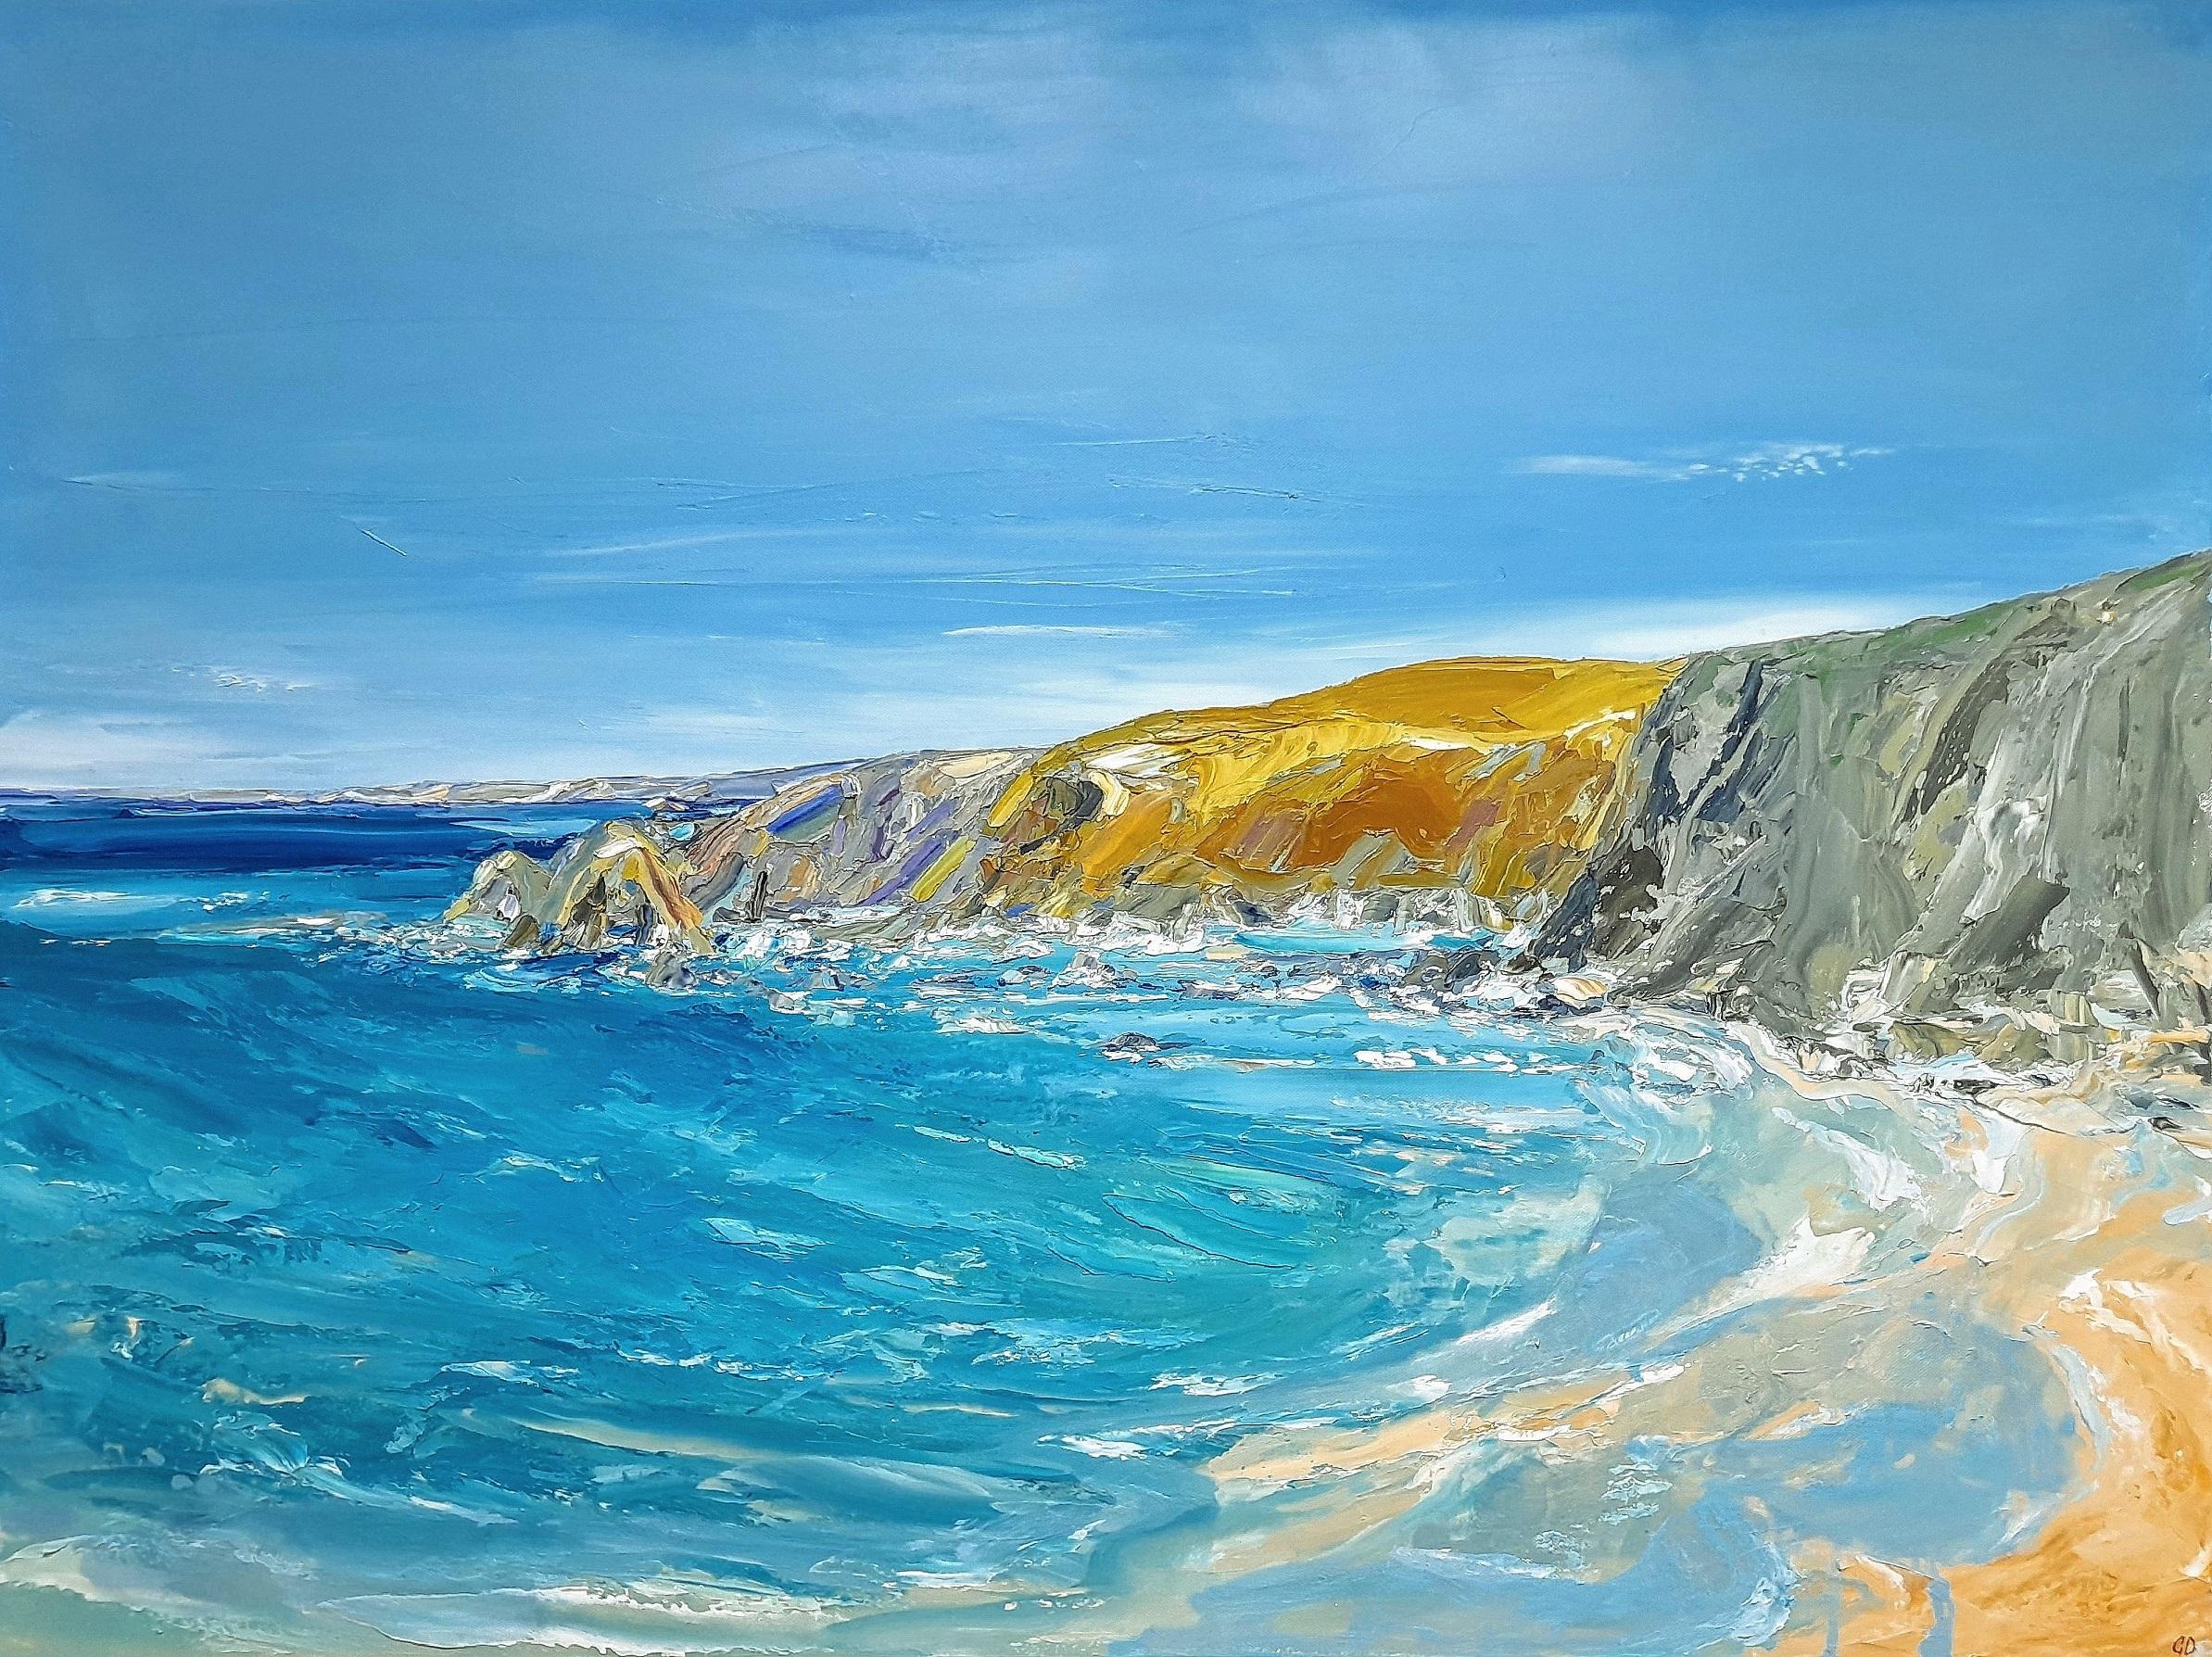 La journée colorée à Trevaunance, peinture de paysages marins et côtiers, Beach House Art